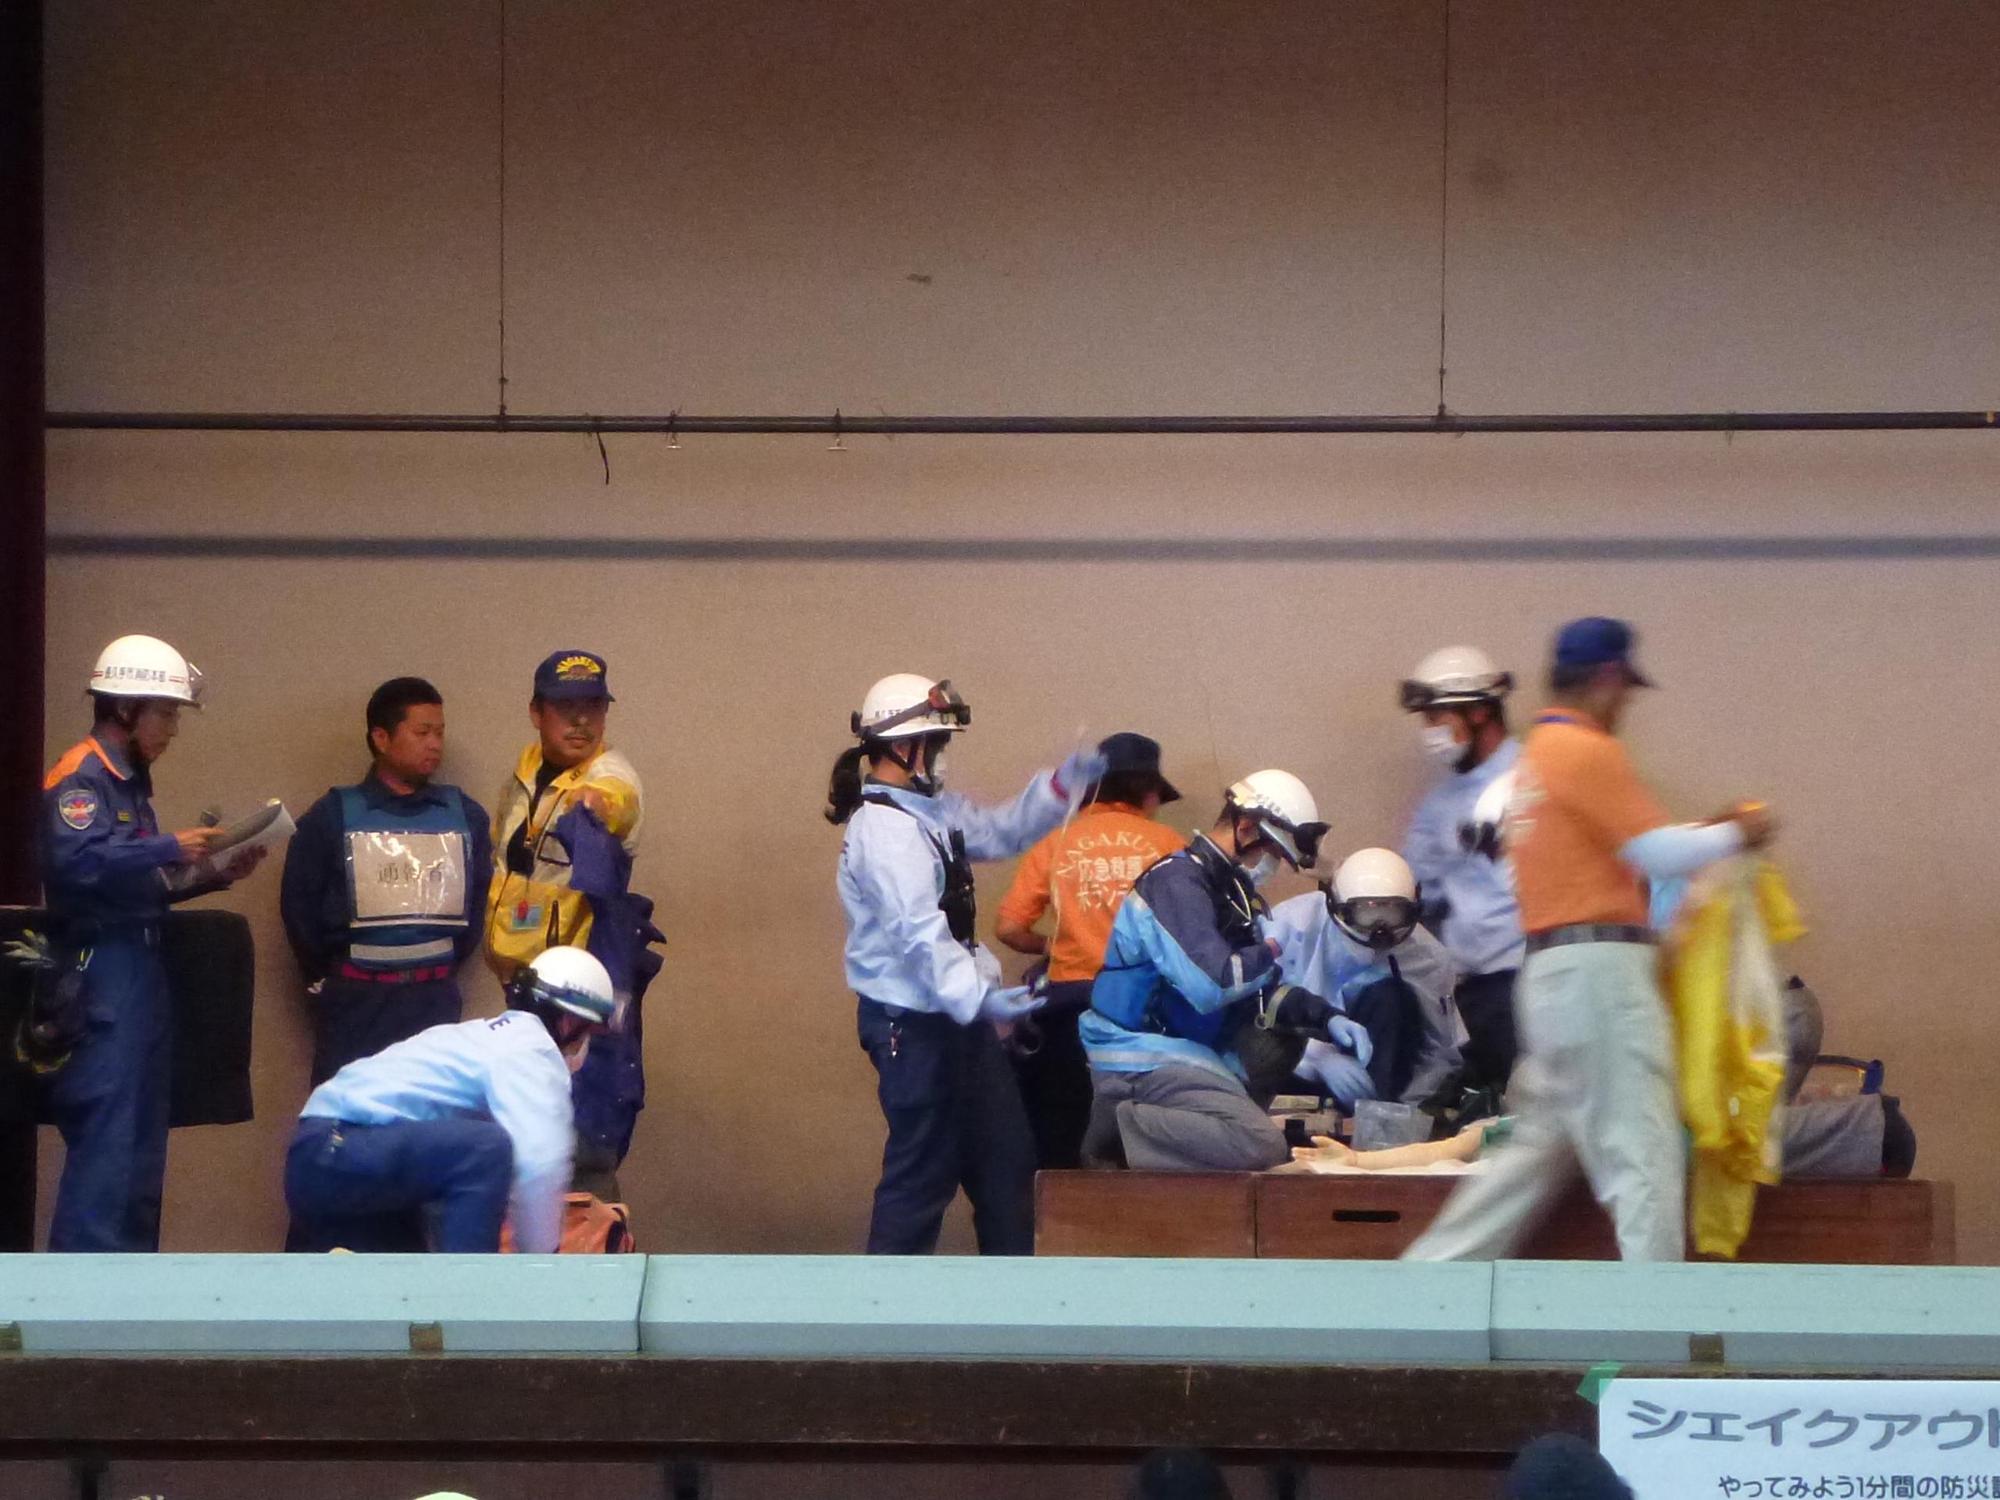 体育館のステージでヘルメットにゴーグル、マスクをした消防署員が救急活動訓練をしている写真